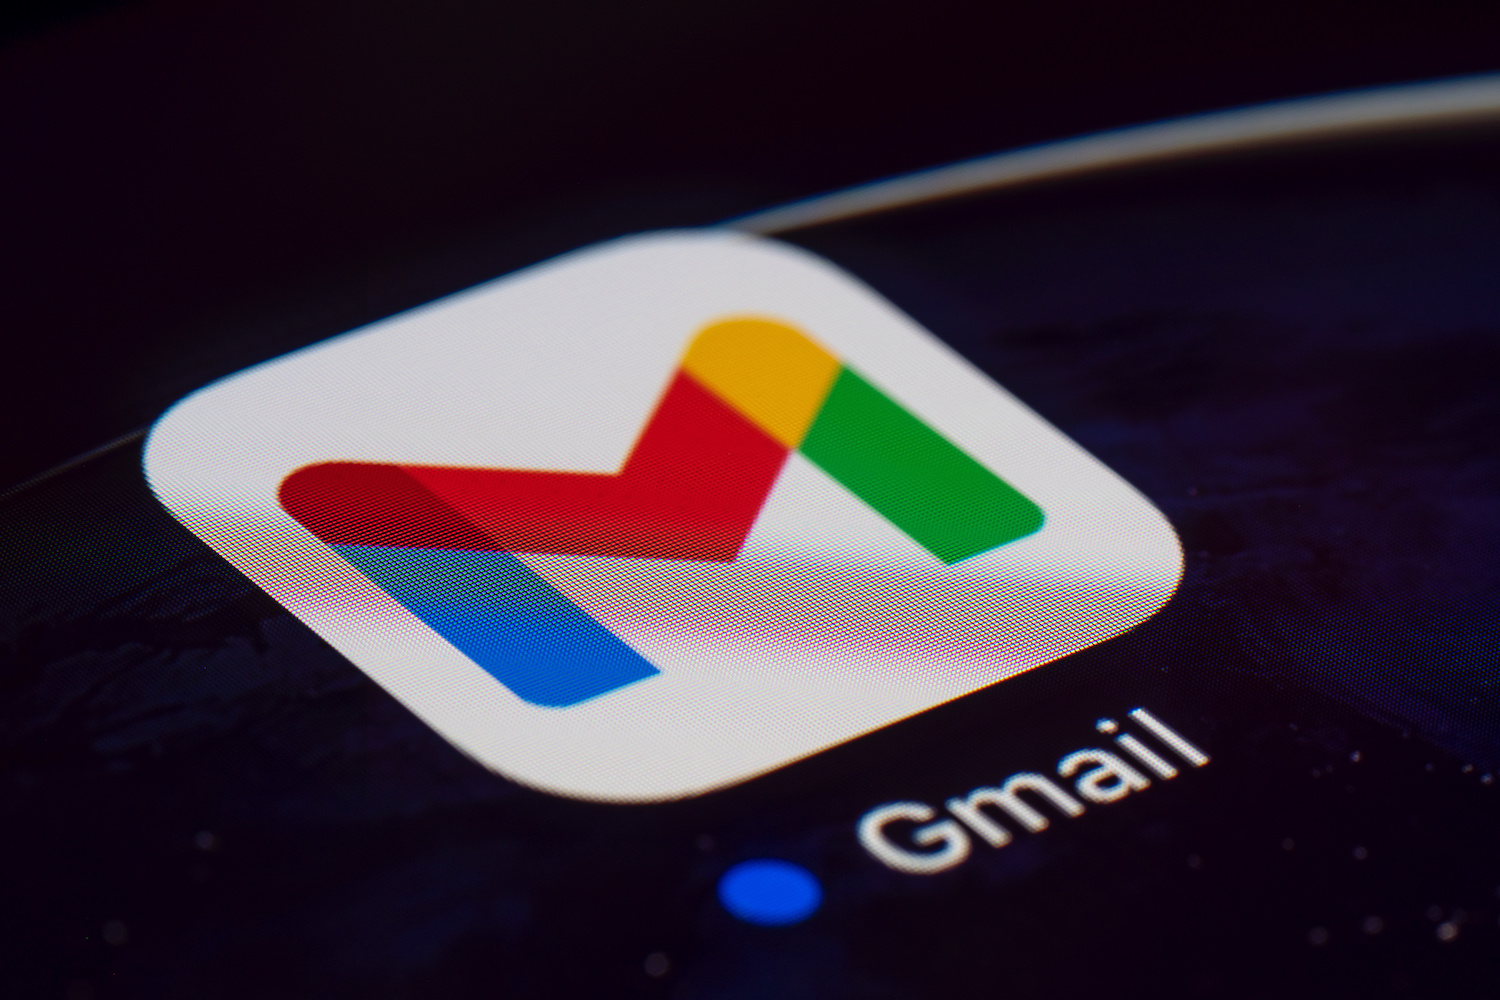 Pantalla de celular con el icono de Gmail – Cómo encontrar correos archivados en tu cuenta de Gmail.